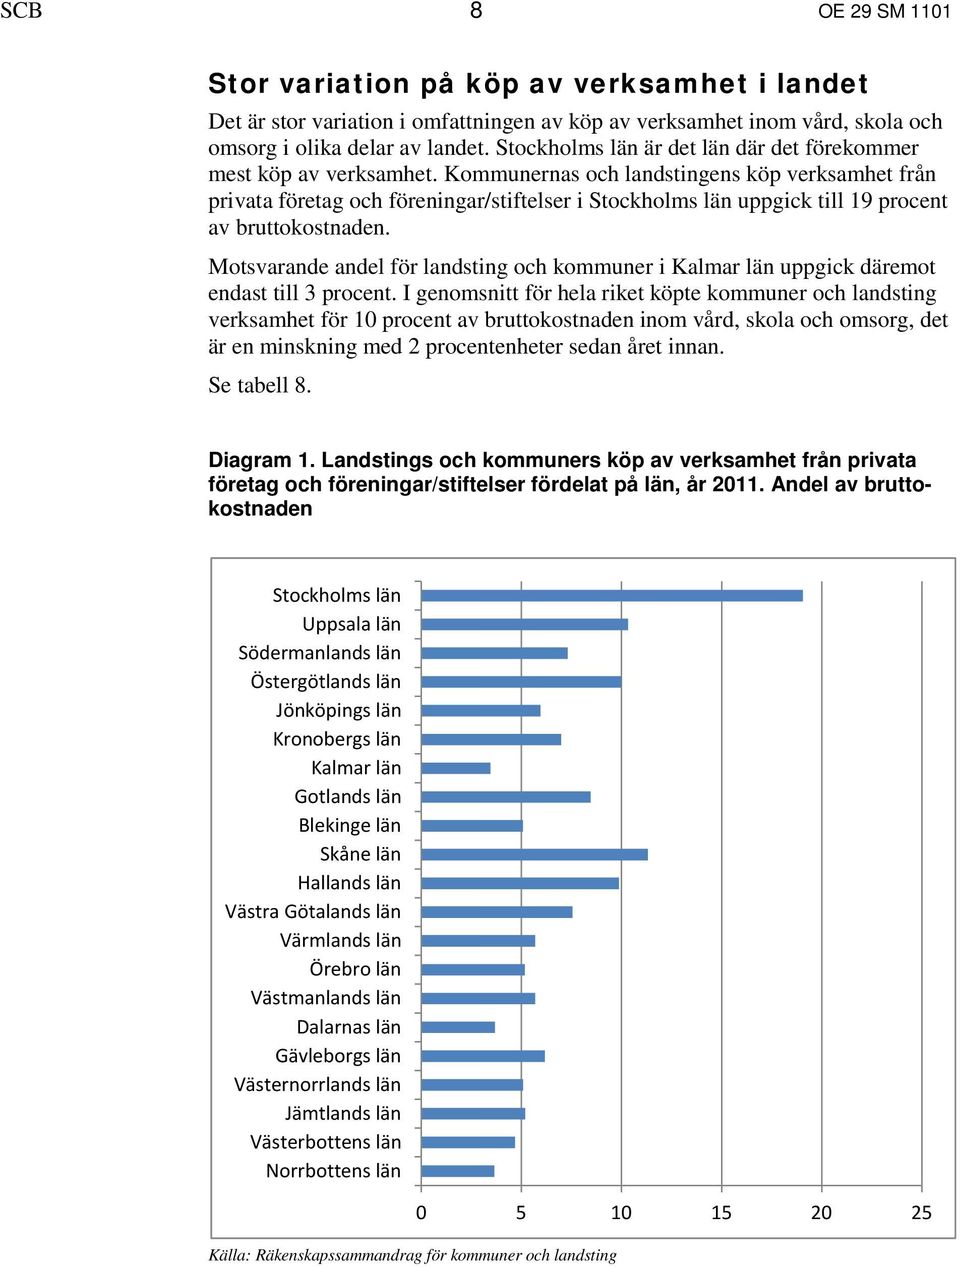 Kommunernas och landstingens köp verksamhet från privata företag och föreningar/stiftelser i Stockholms län uppgick till 19 procent av bruttokostnaden.